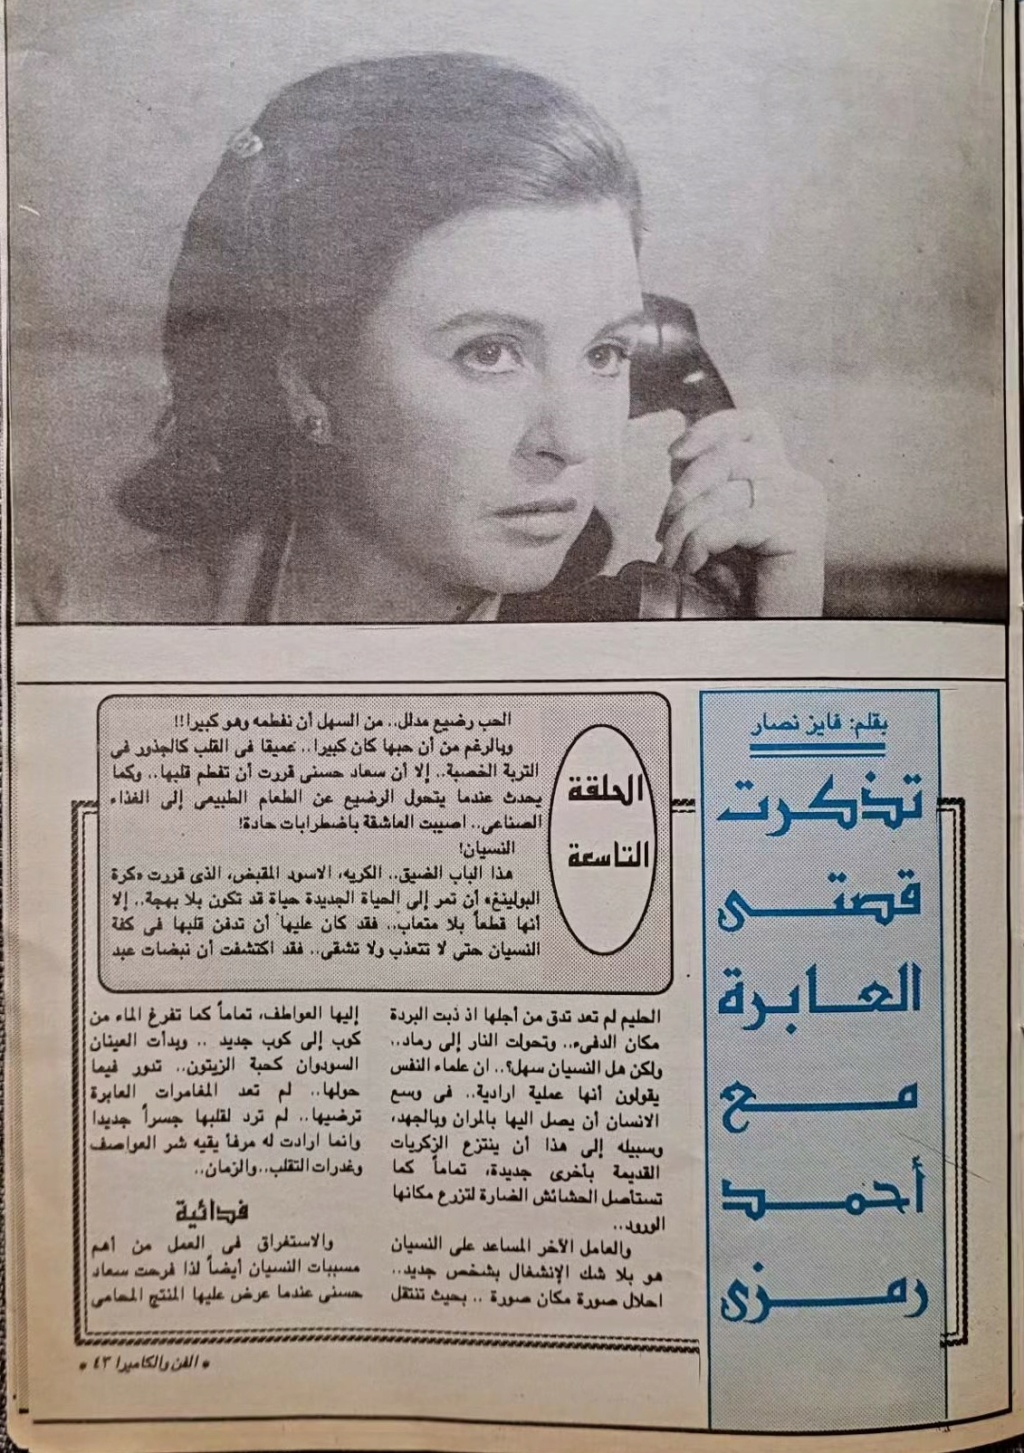 مقال - مقال صحفي : سعاد حسني تتذكر .. اختفيت وحبيبي الجديد وراء الأهرام 1992 م 289